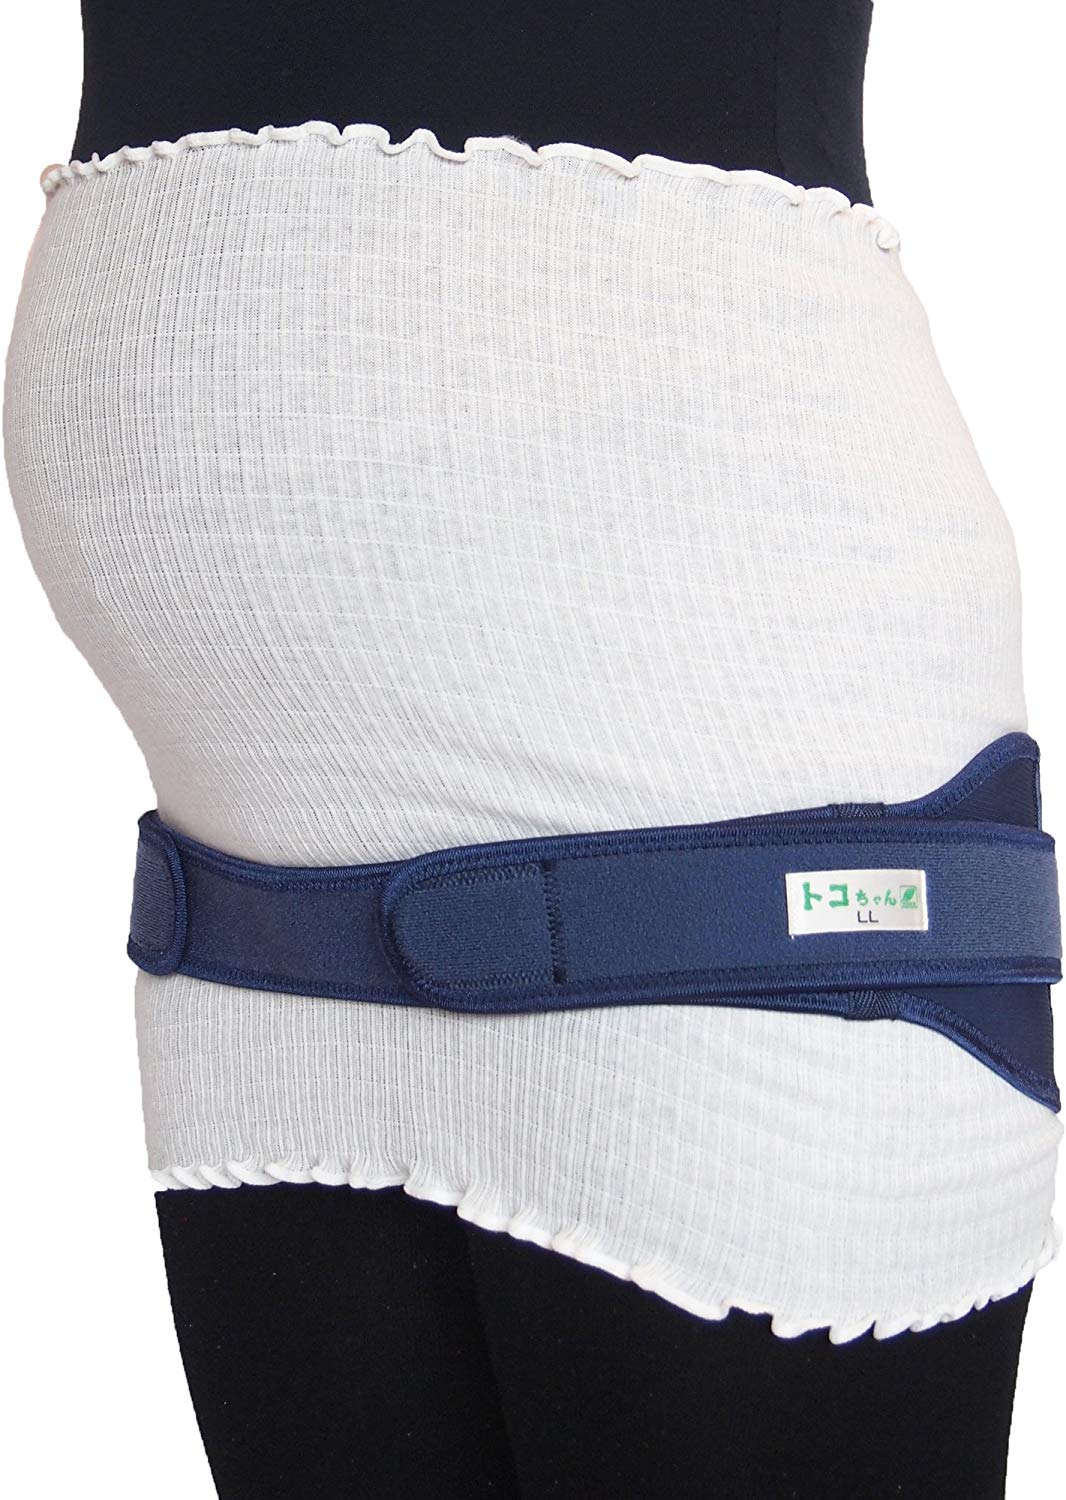 妊娠帯のおすすめ10選 寝る時に付けられる腹巻きタイプも Heim ハイム